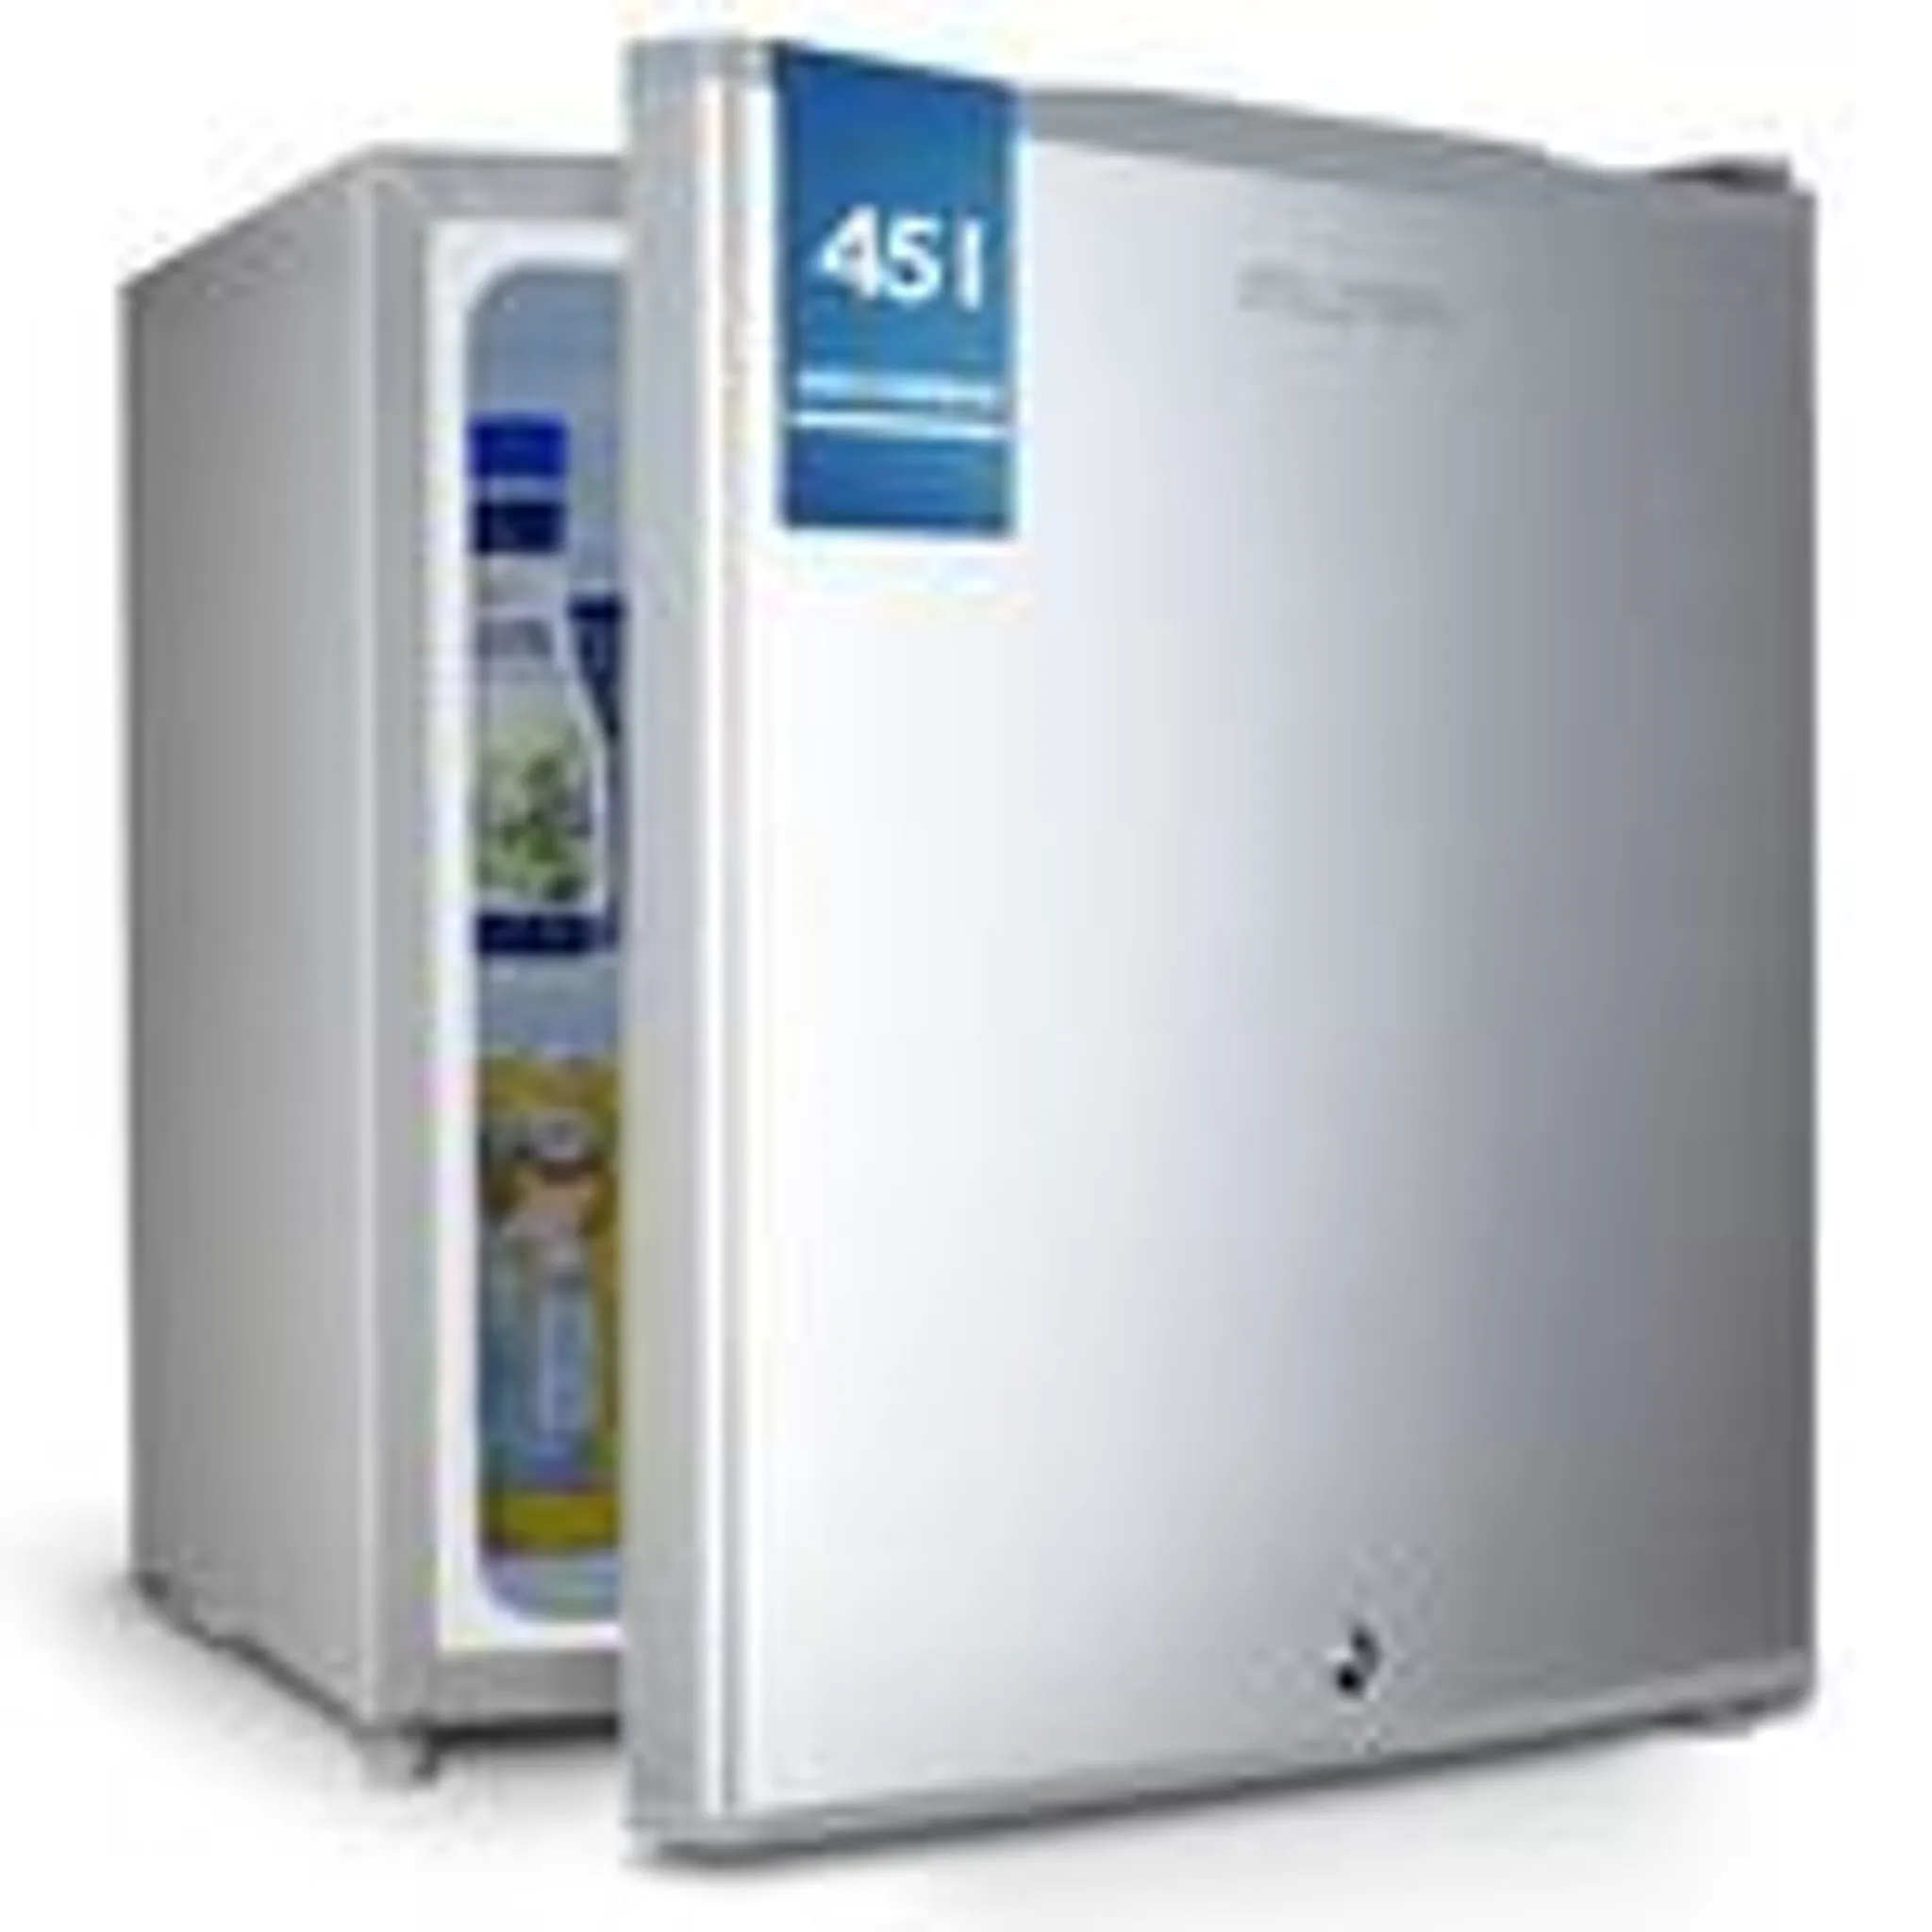 B-Ware Minikühlschrank E 45L mit Schloss und Frostfach Leise Mini  Kühlschrank